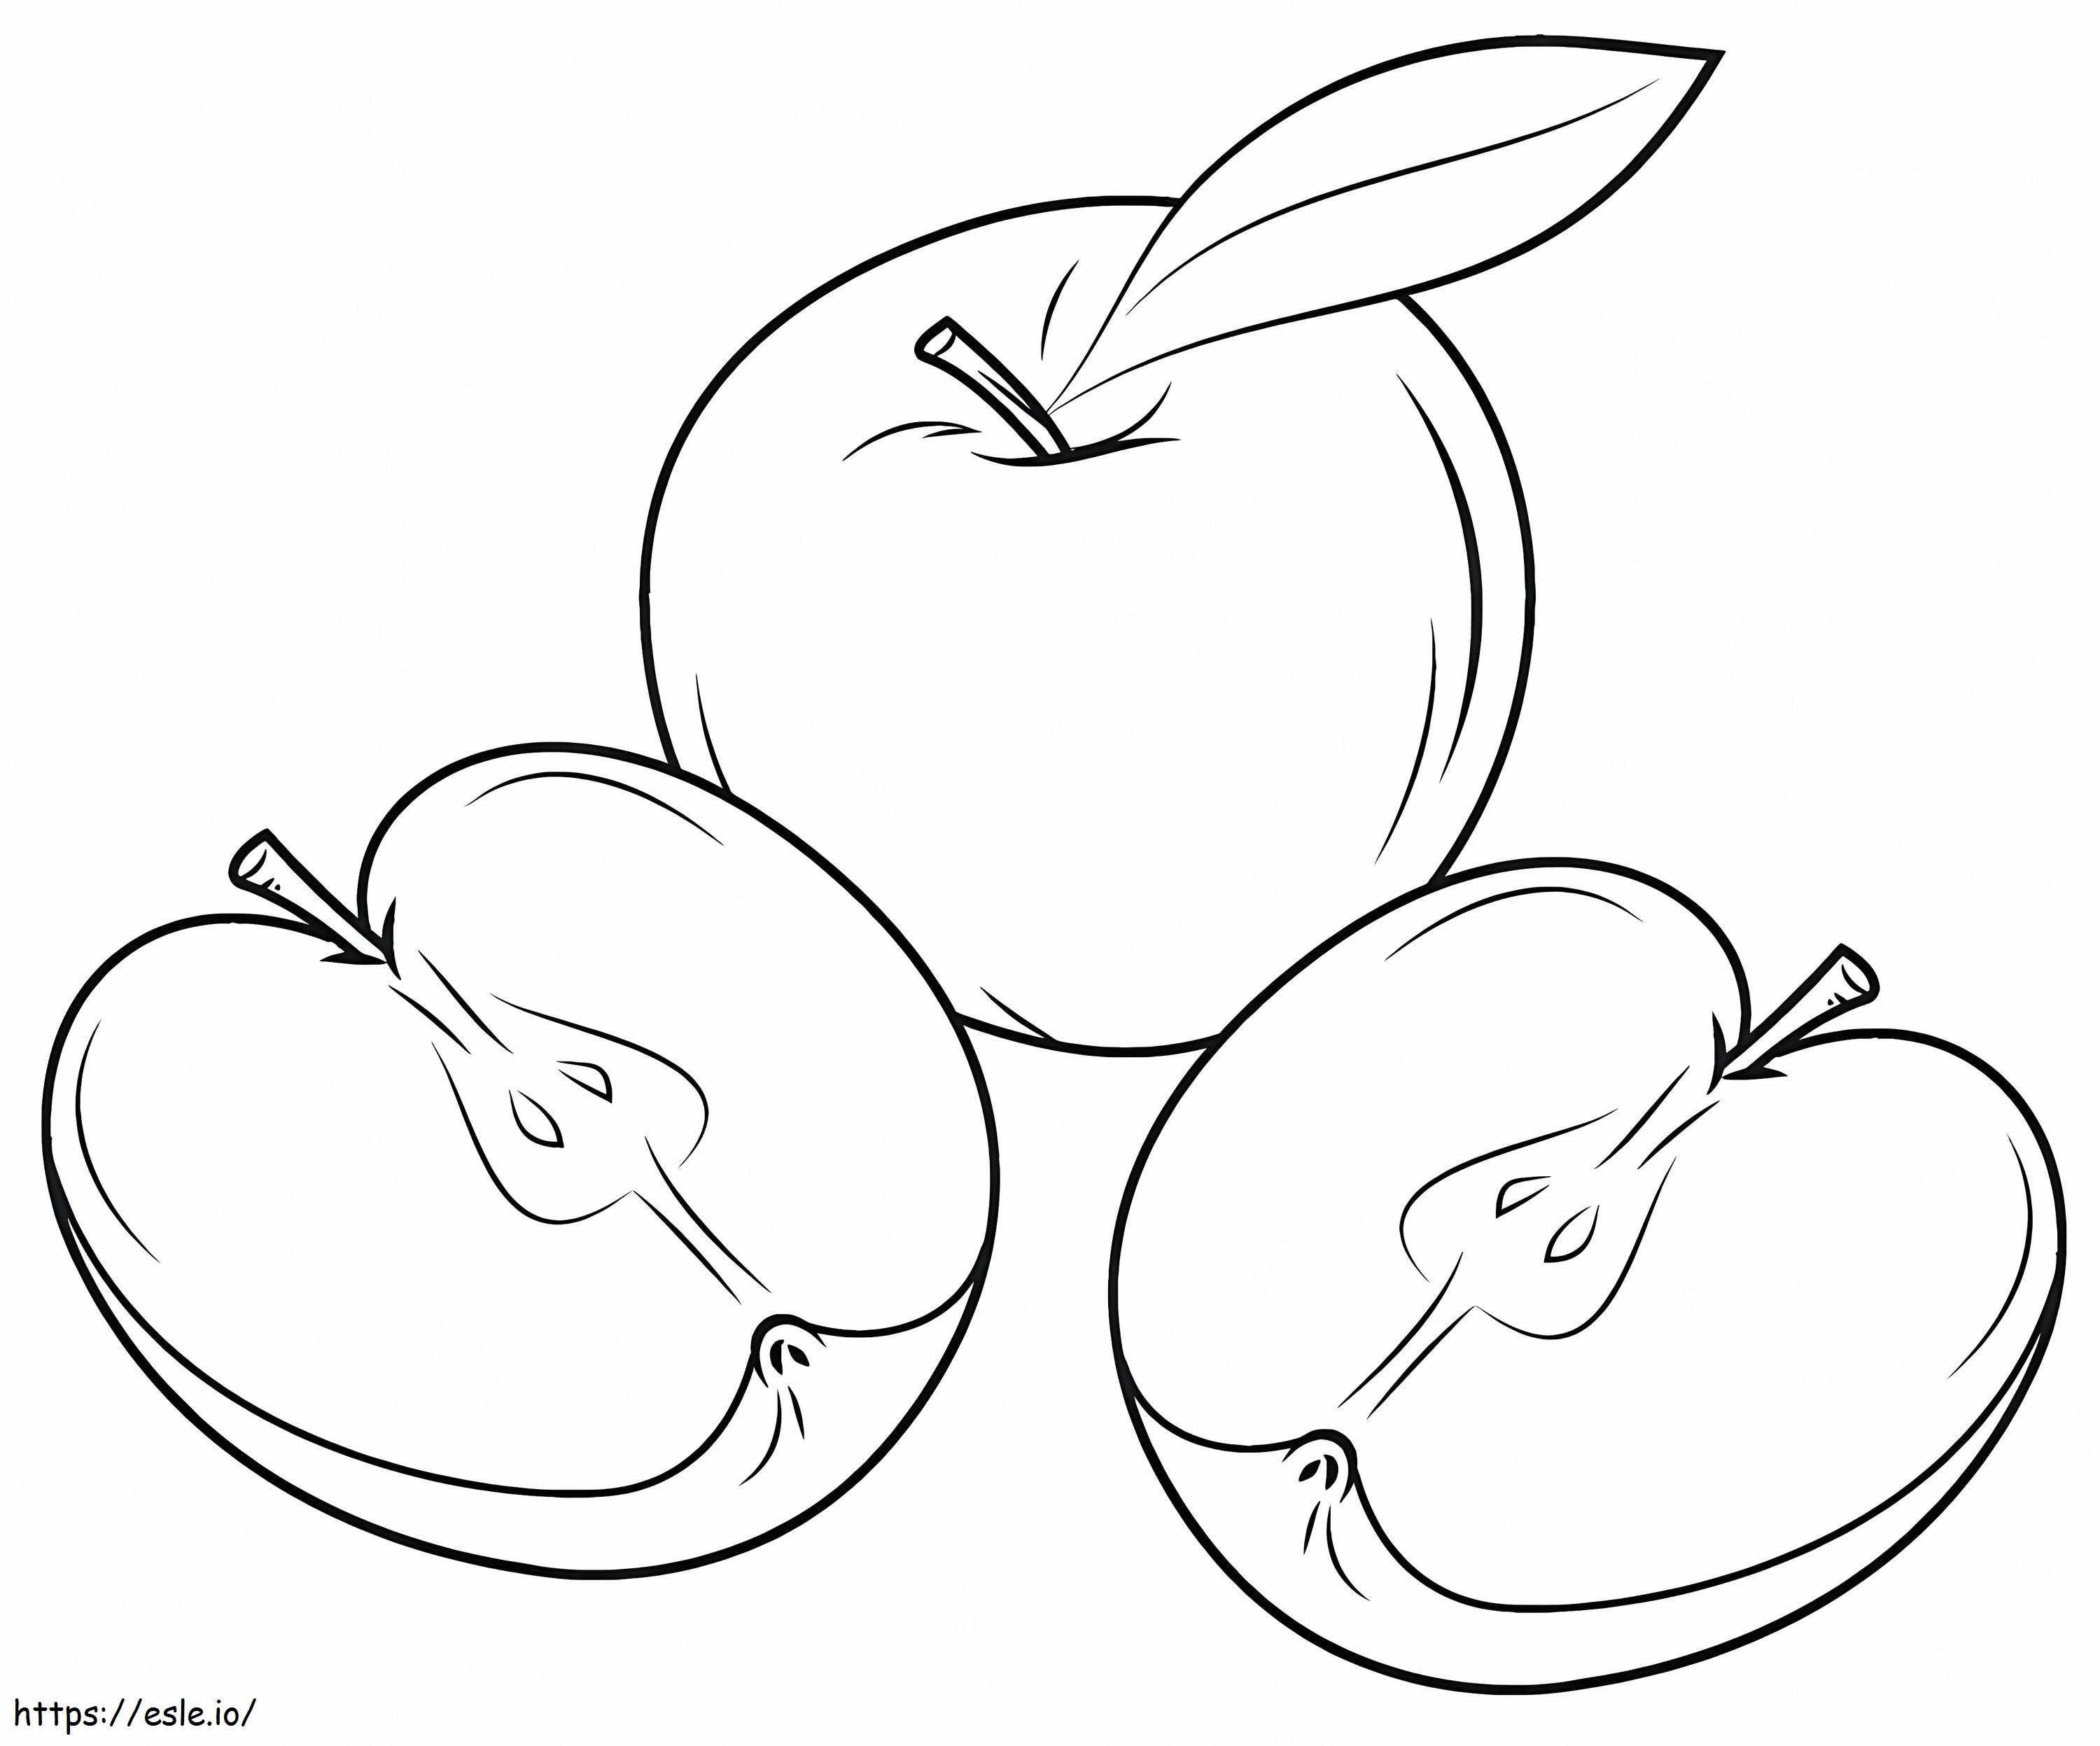 Bir Elma ve İki Elma Dilimleri boyama